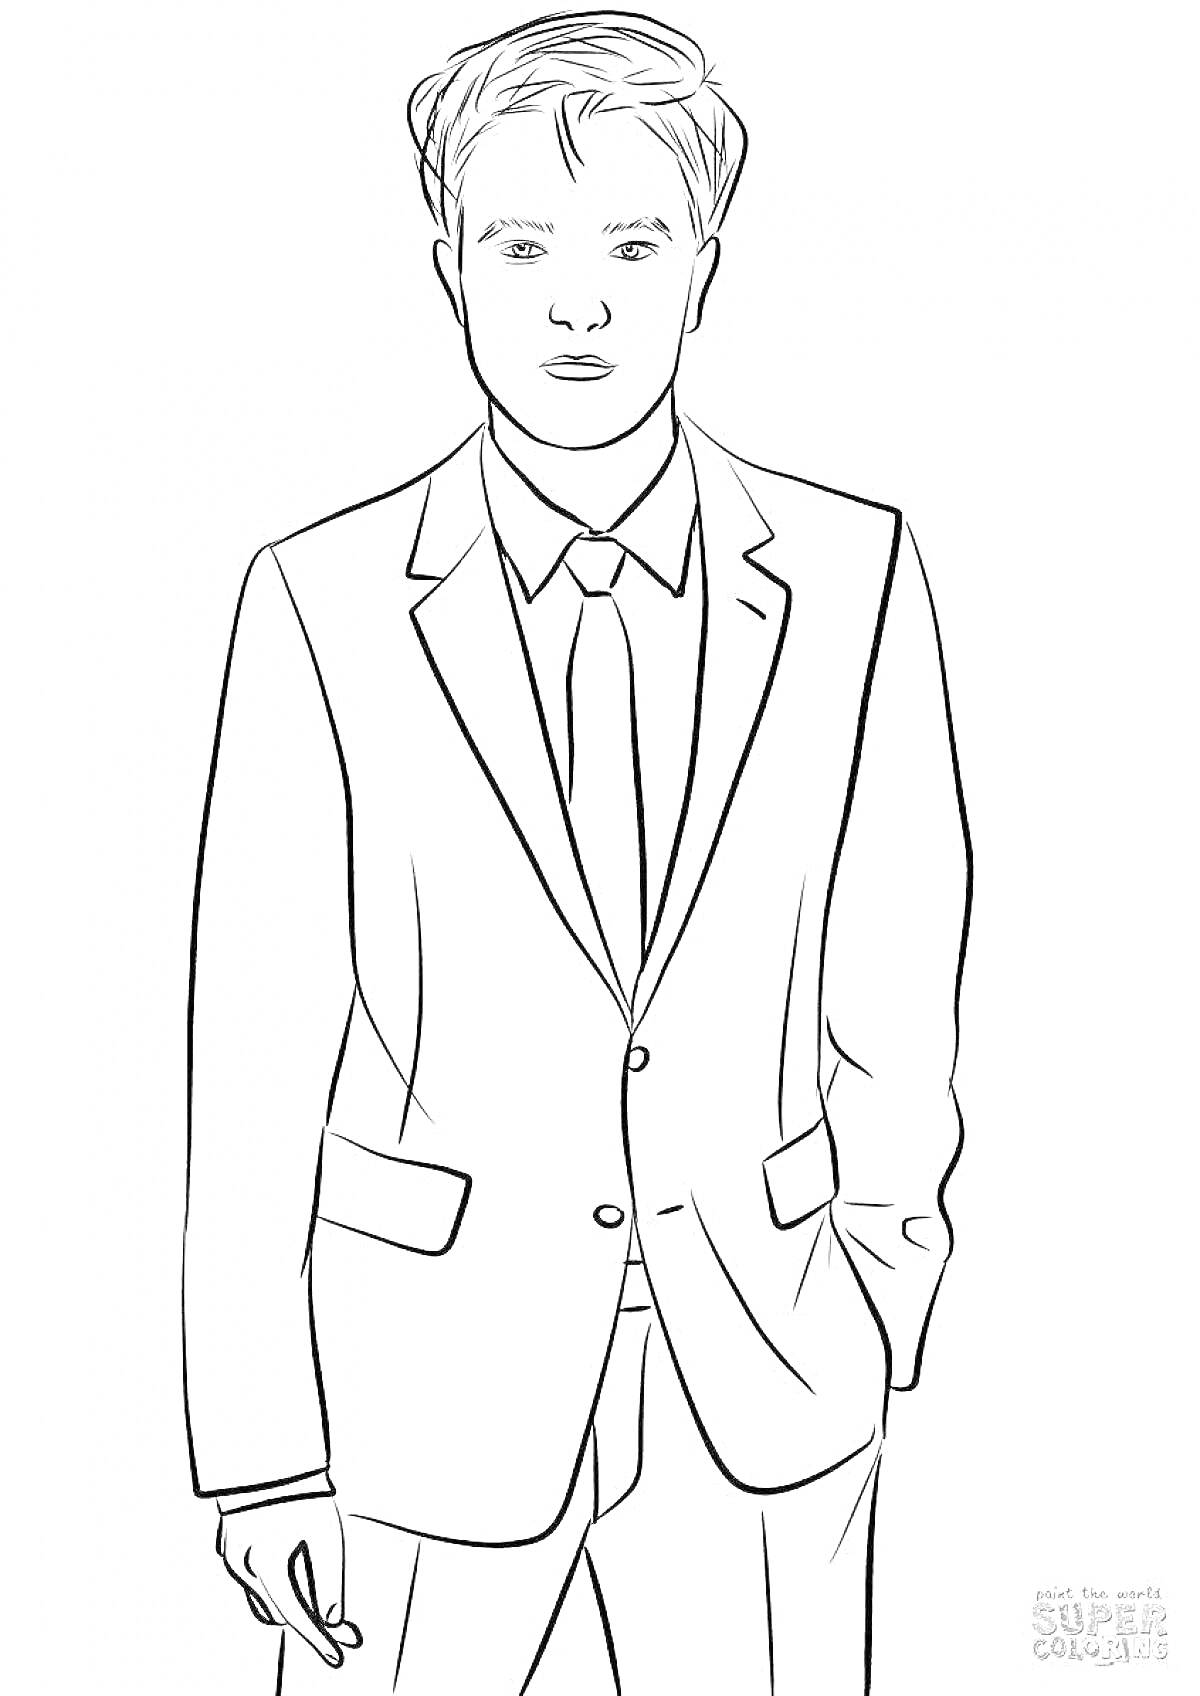 Раскраска Человек в деловом костюме с галстуком и прической, смотрящий вперед